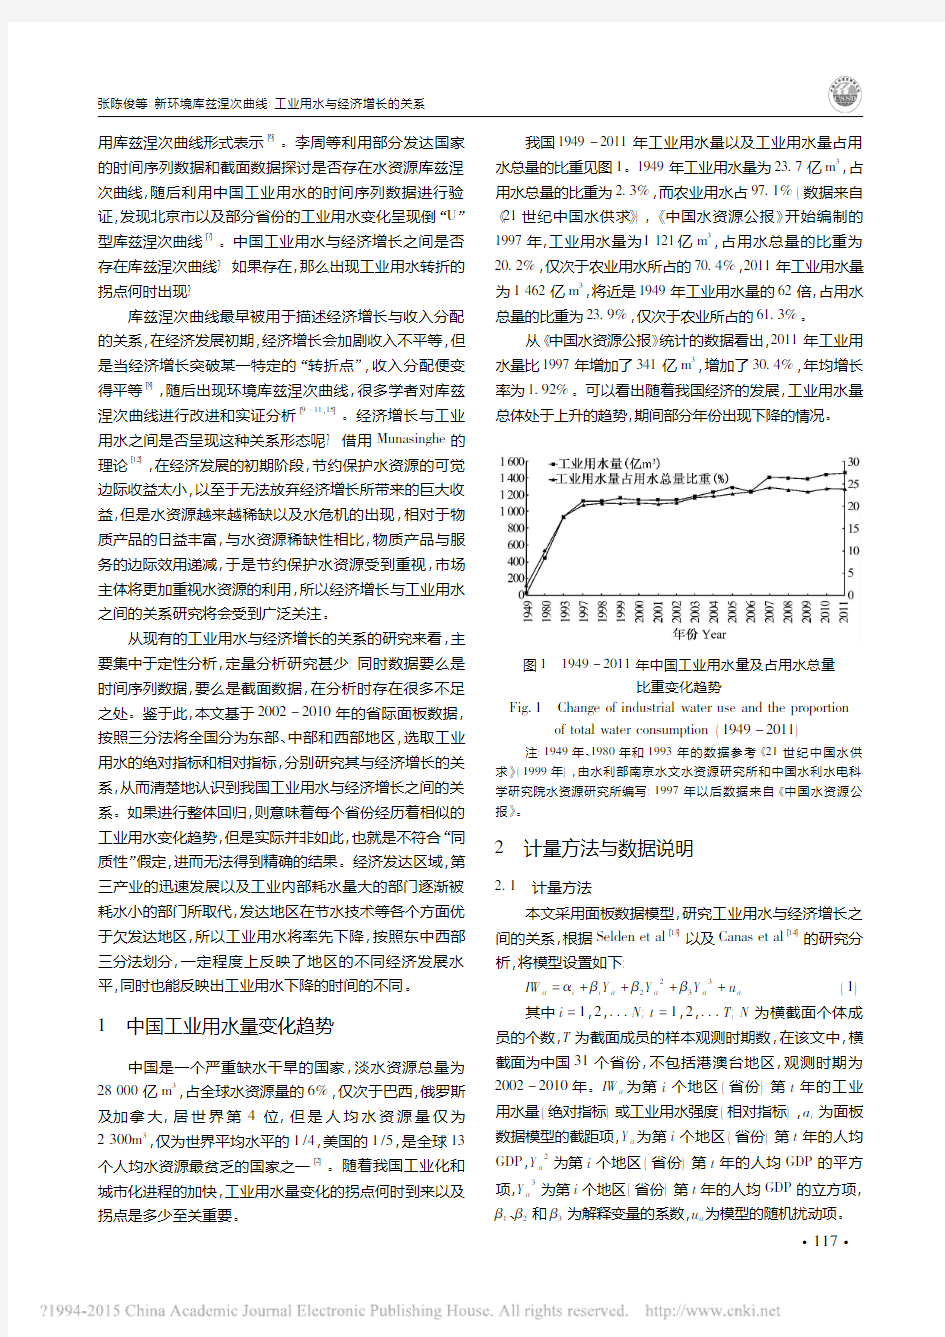 新环境库兹涅次曲线_工业用水与经济增长的关系_张陈俊